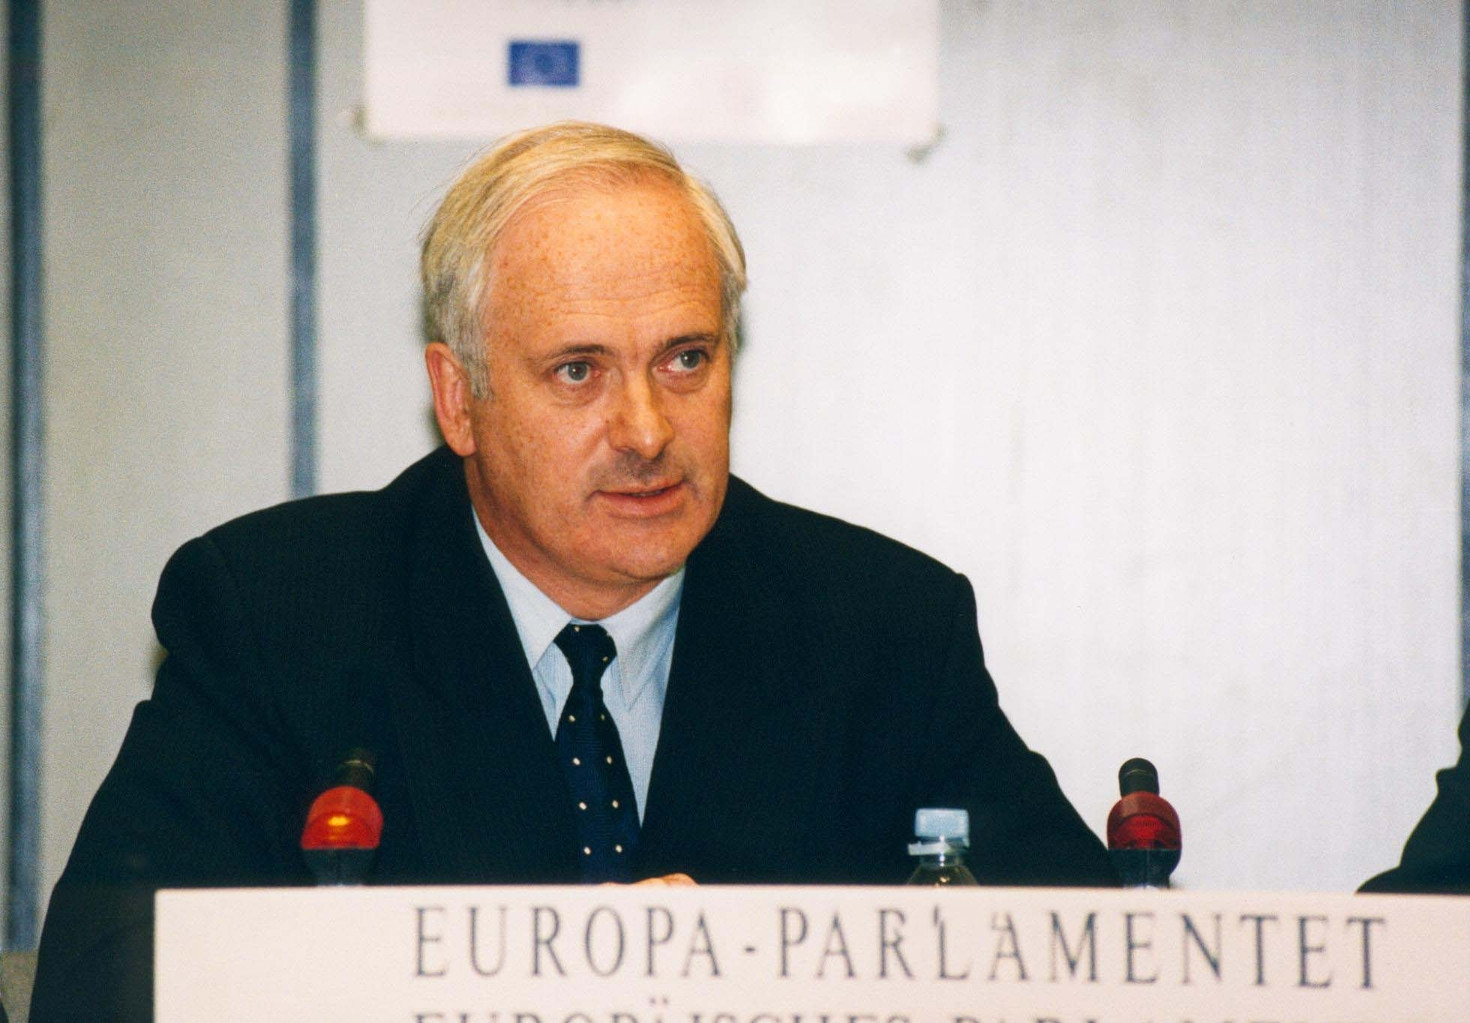 © European Union 1996 - EP Hommes politiques et élections multiples